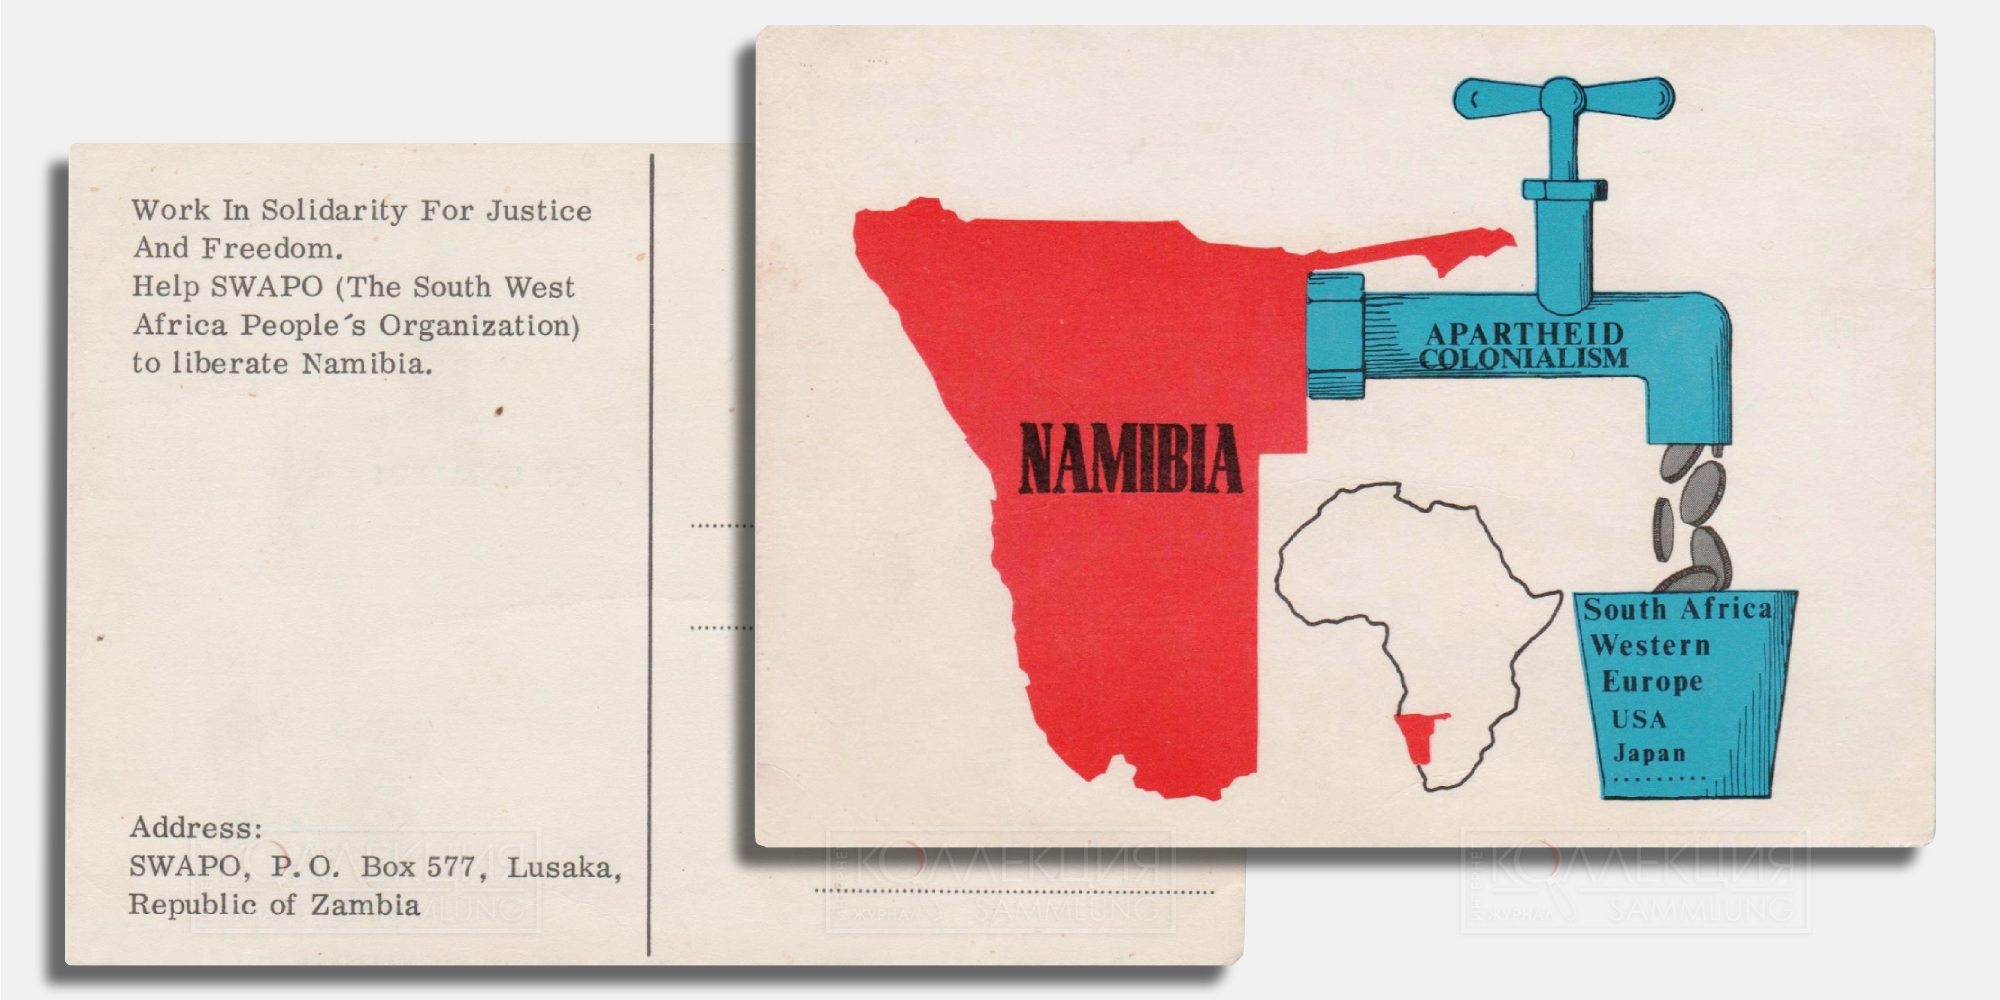 Открытка в поддержку СВАПО, против апартеида и колониализма, политическая карикатура на выкачивание из Намибии денег в ЮАР, Западную Европу, США, Японию. «Work in Solidarity For Justice And Freedom. Help SWAPO (The South West Africa People's Organisation) to Liberate Namibia». Интересно, в связи с тем, что СВАПО в Намибии была подпольной, адрес указан в столице Замбии, Лусака. Коллекция Михаила Тренихина